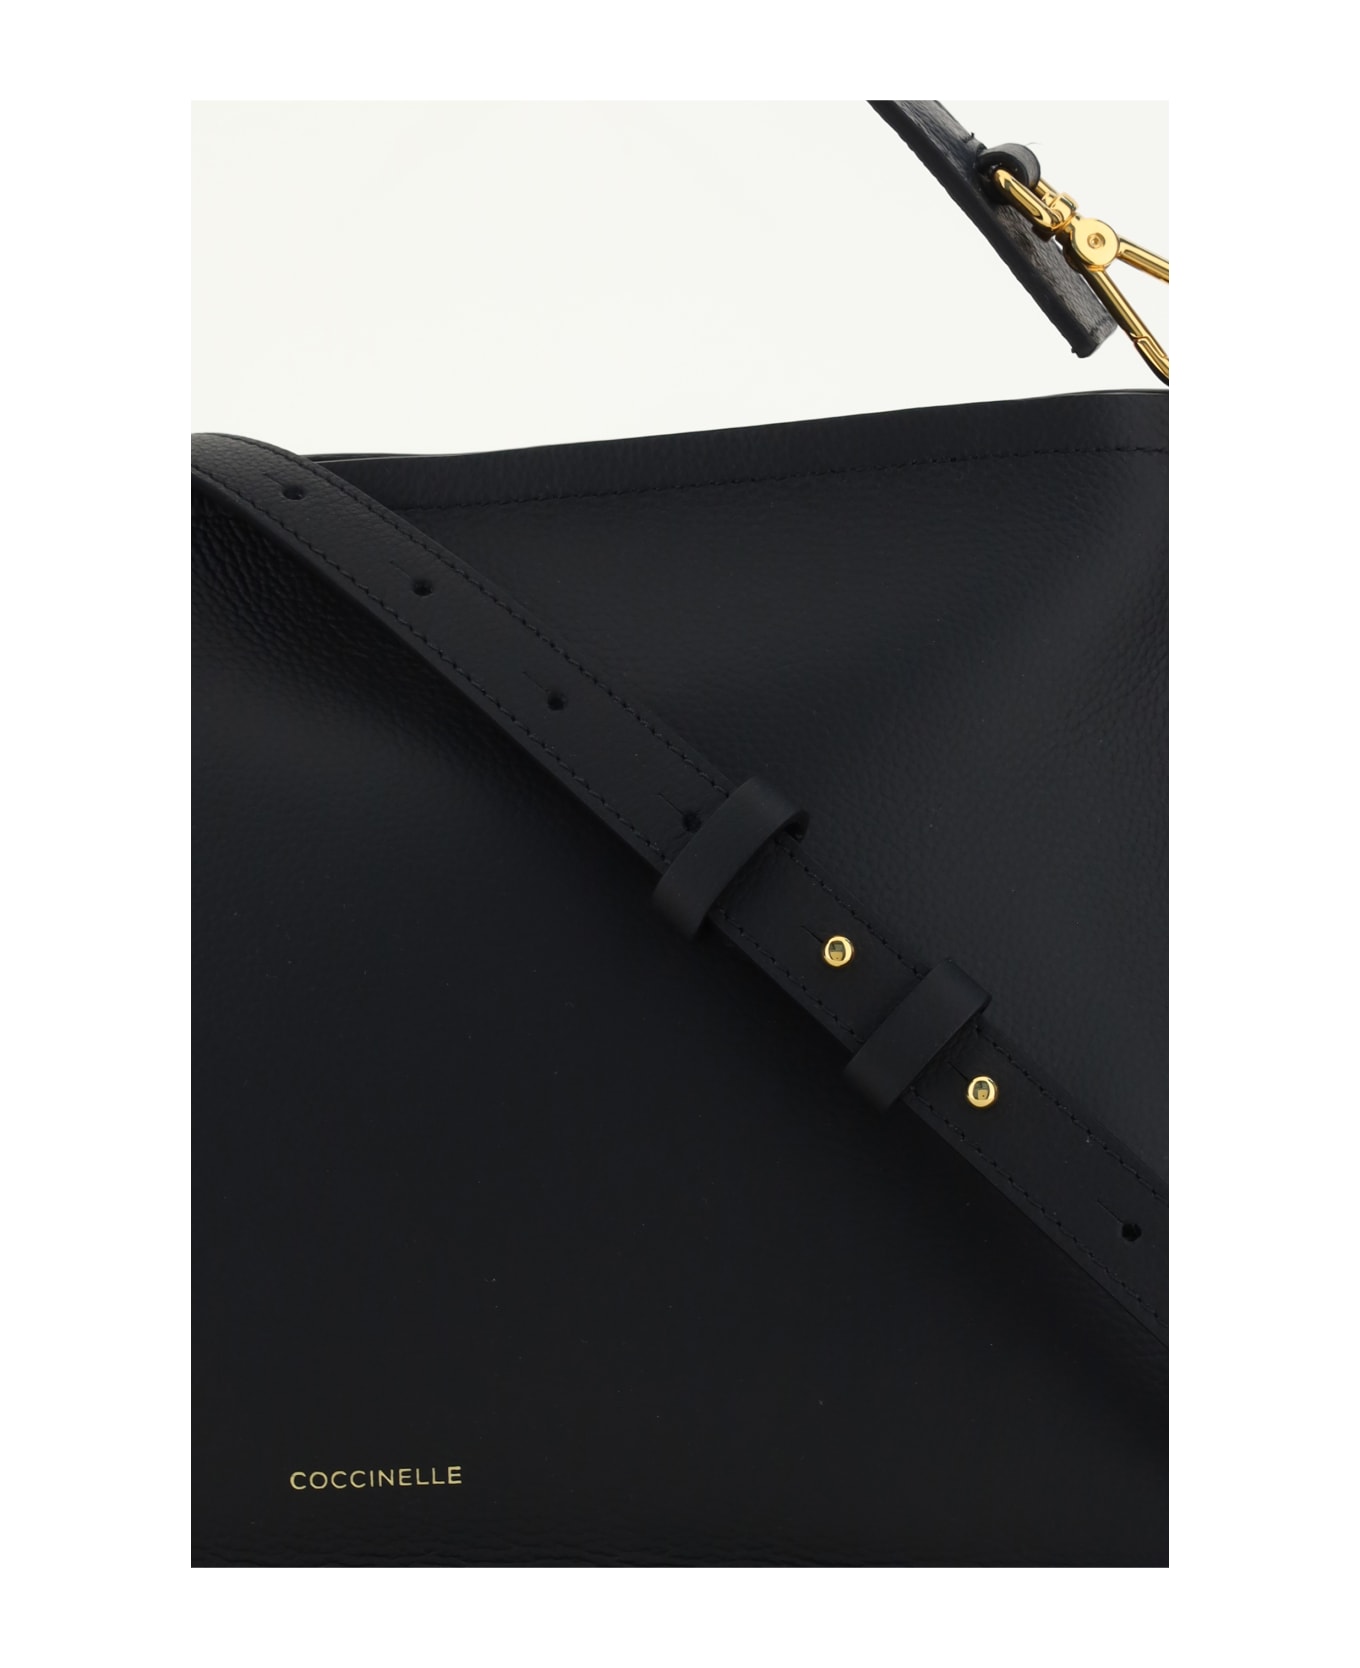 Coccinelle Handbag - Noir/cuir